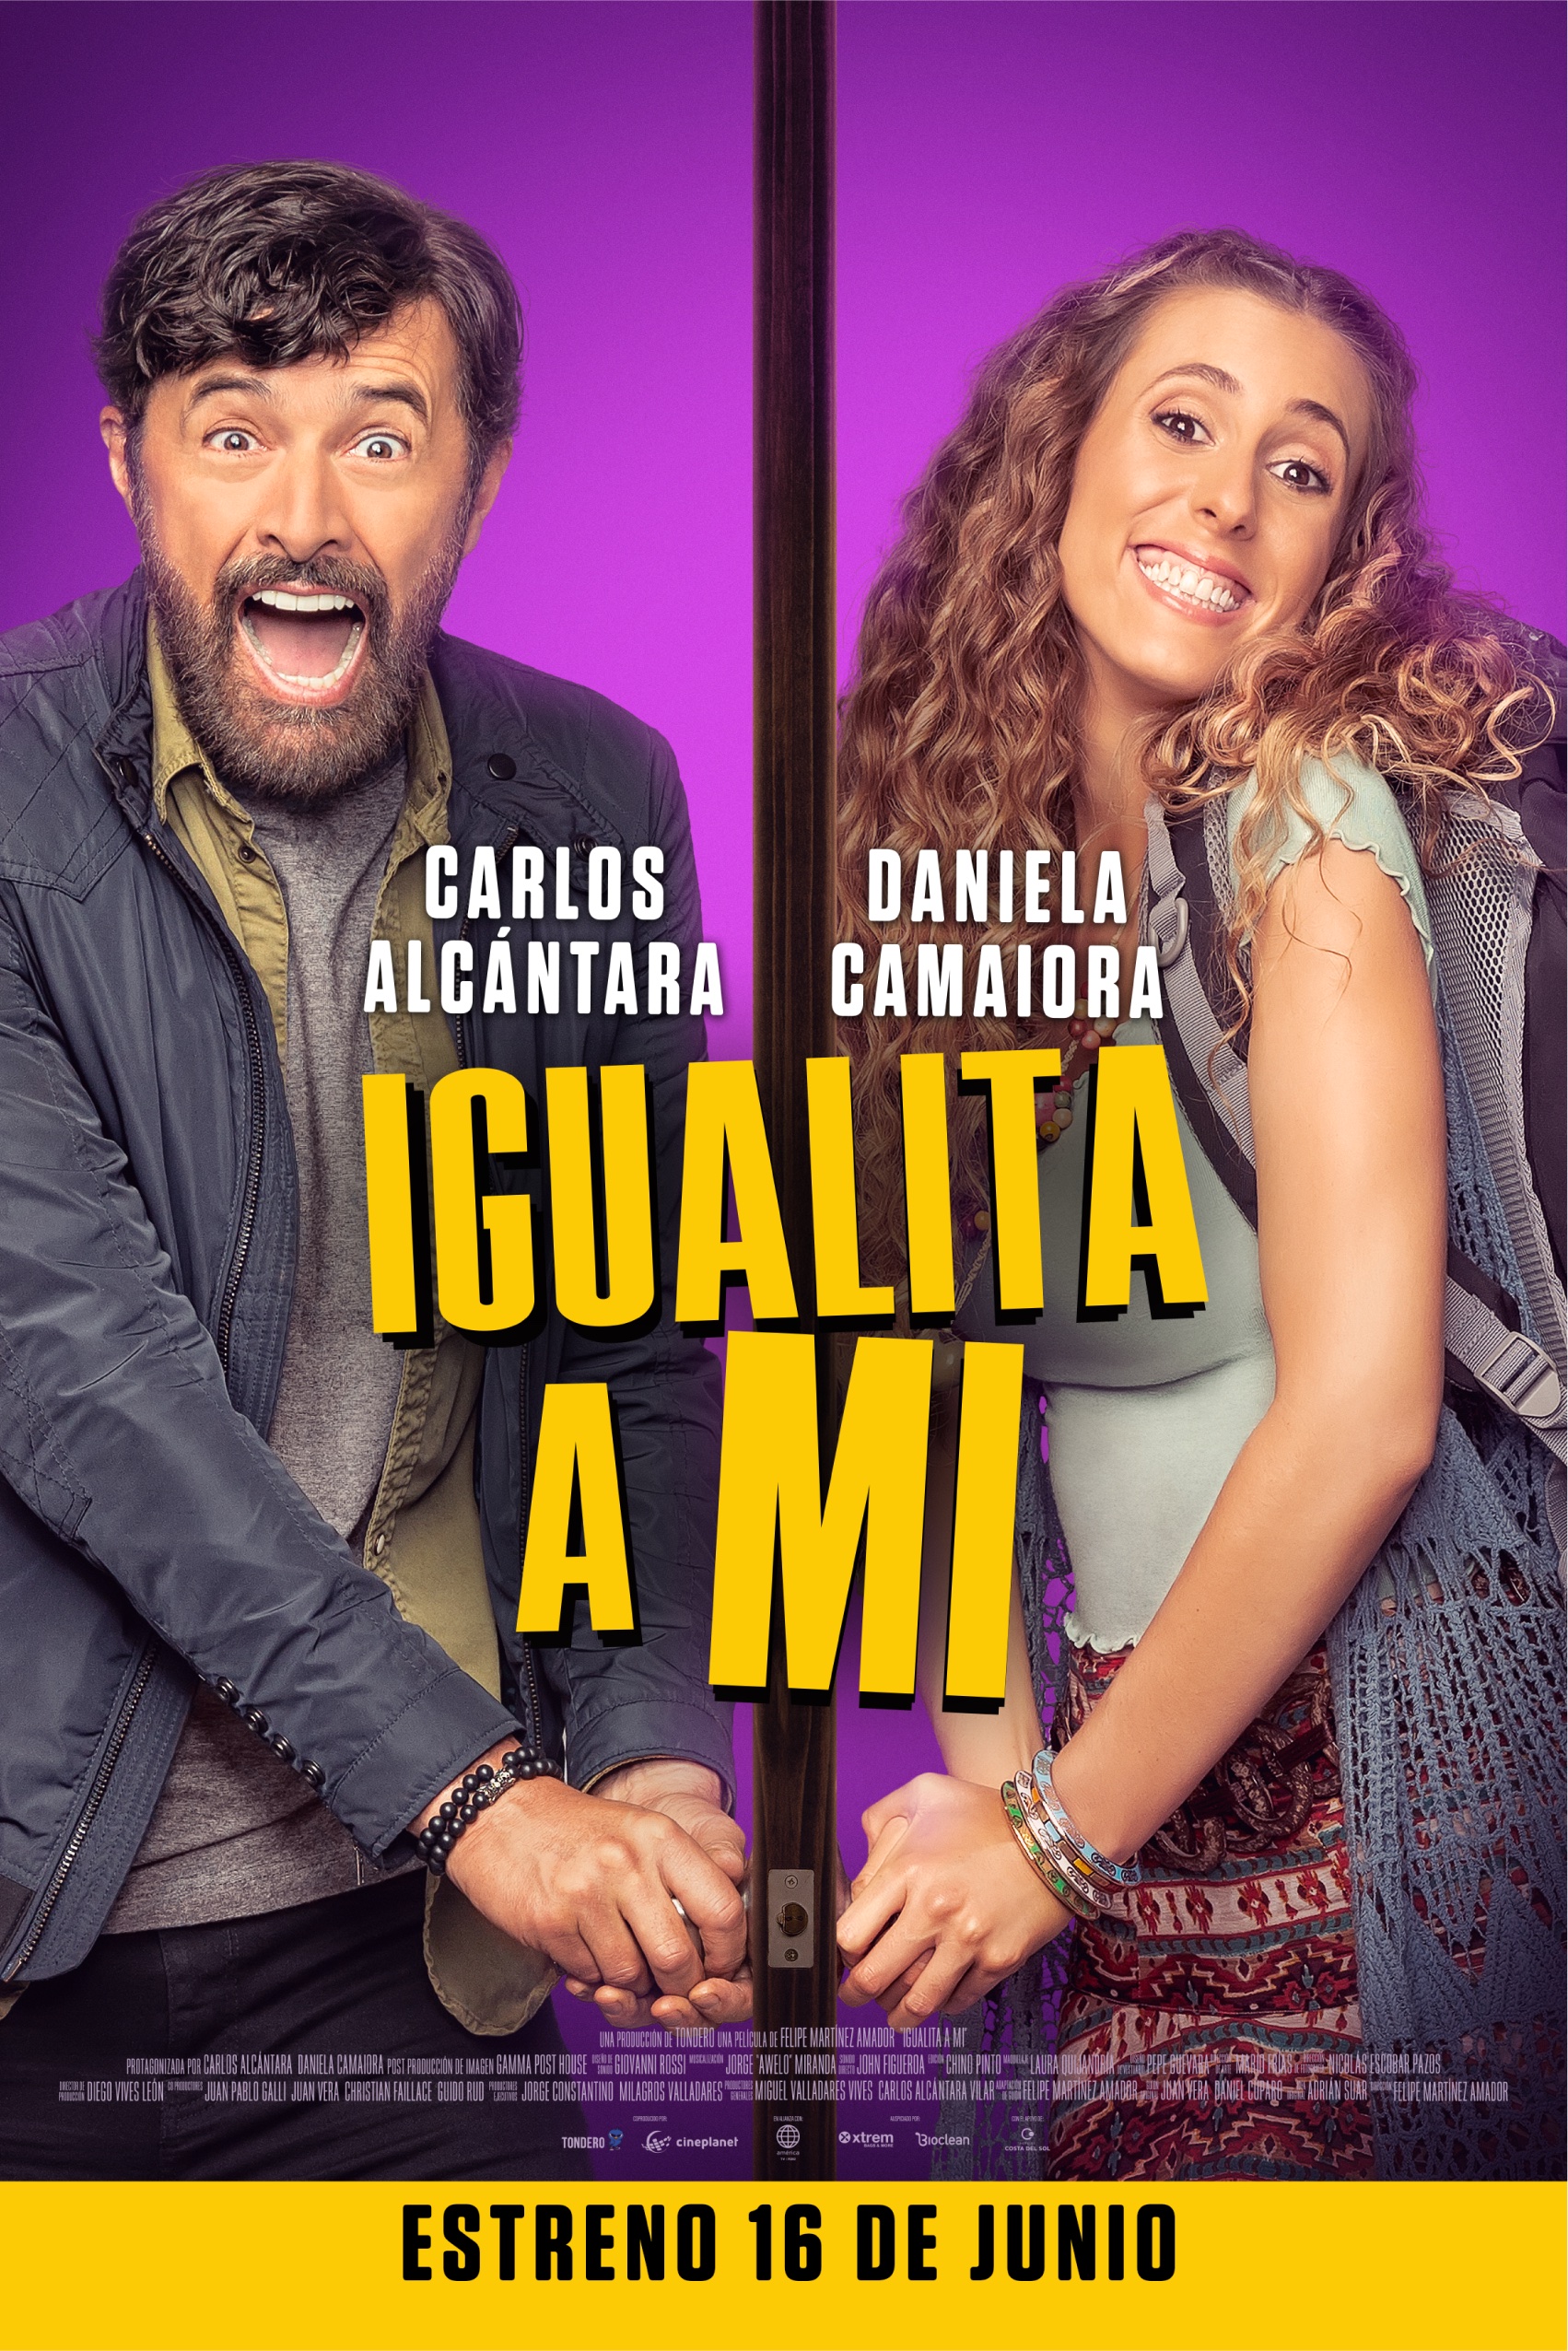 Presentan el tráiler de la película ‘Igualita a mi’ con Carlos Alcántara y Daniela Camaiora